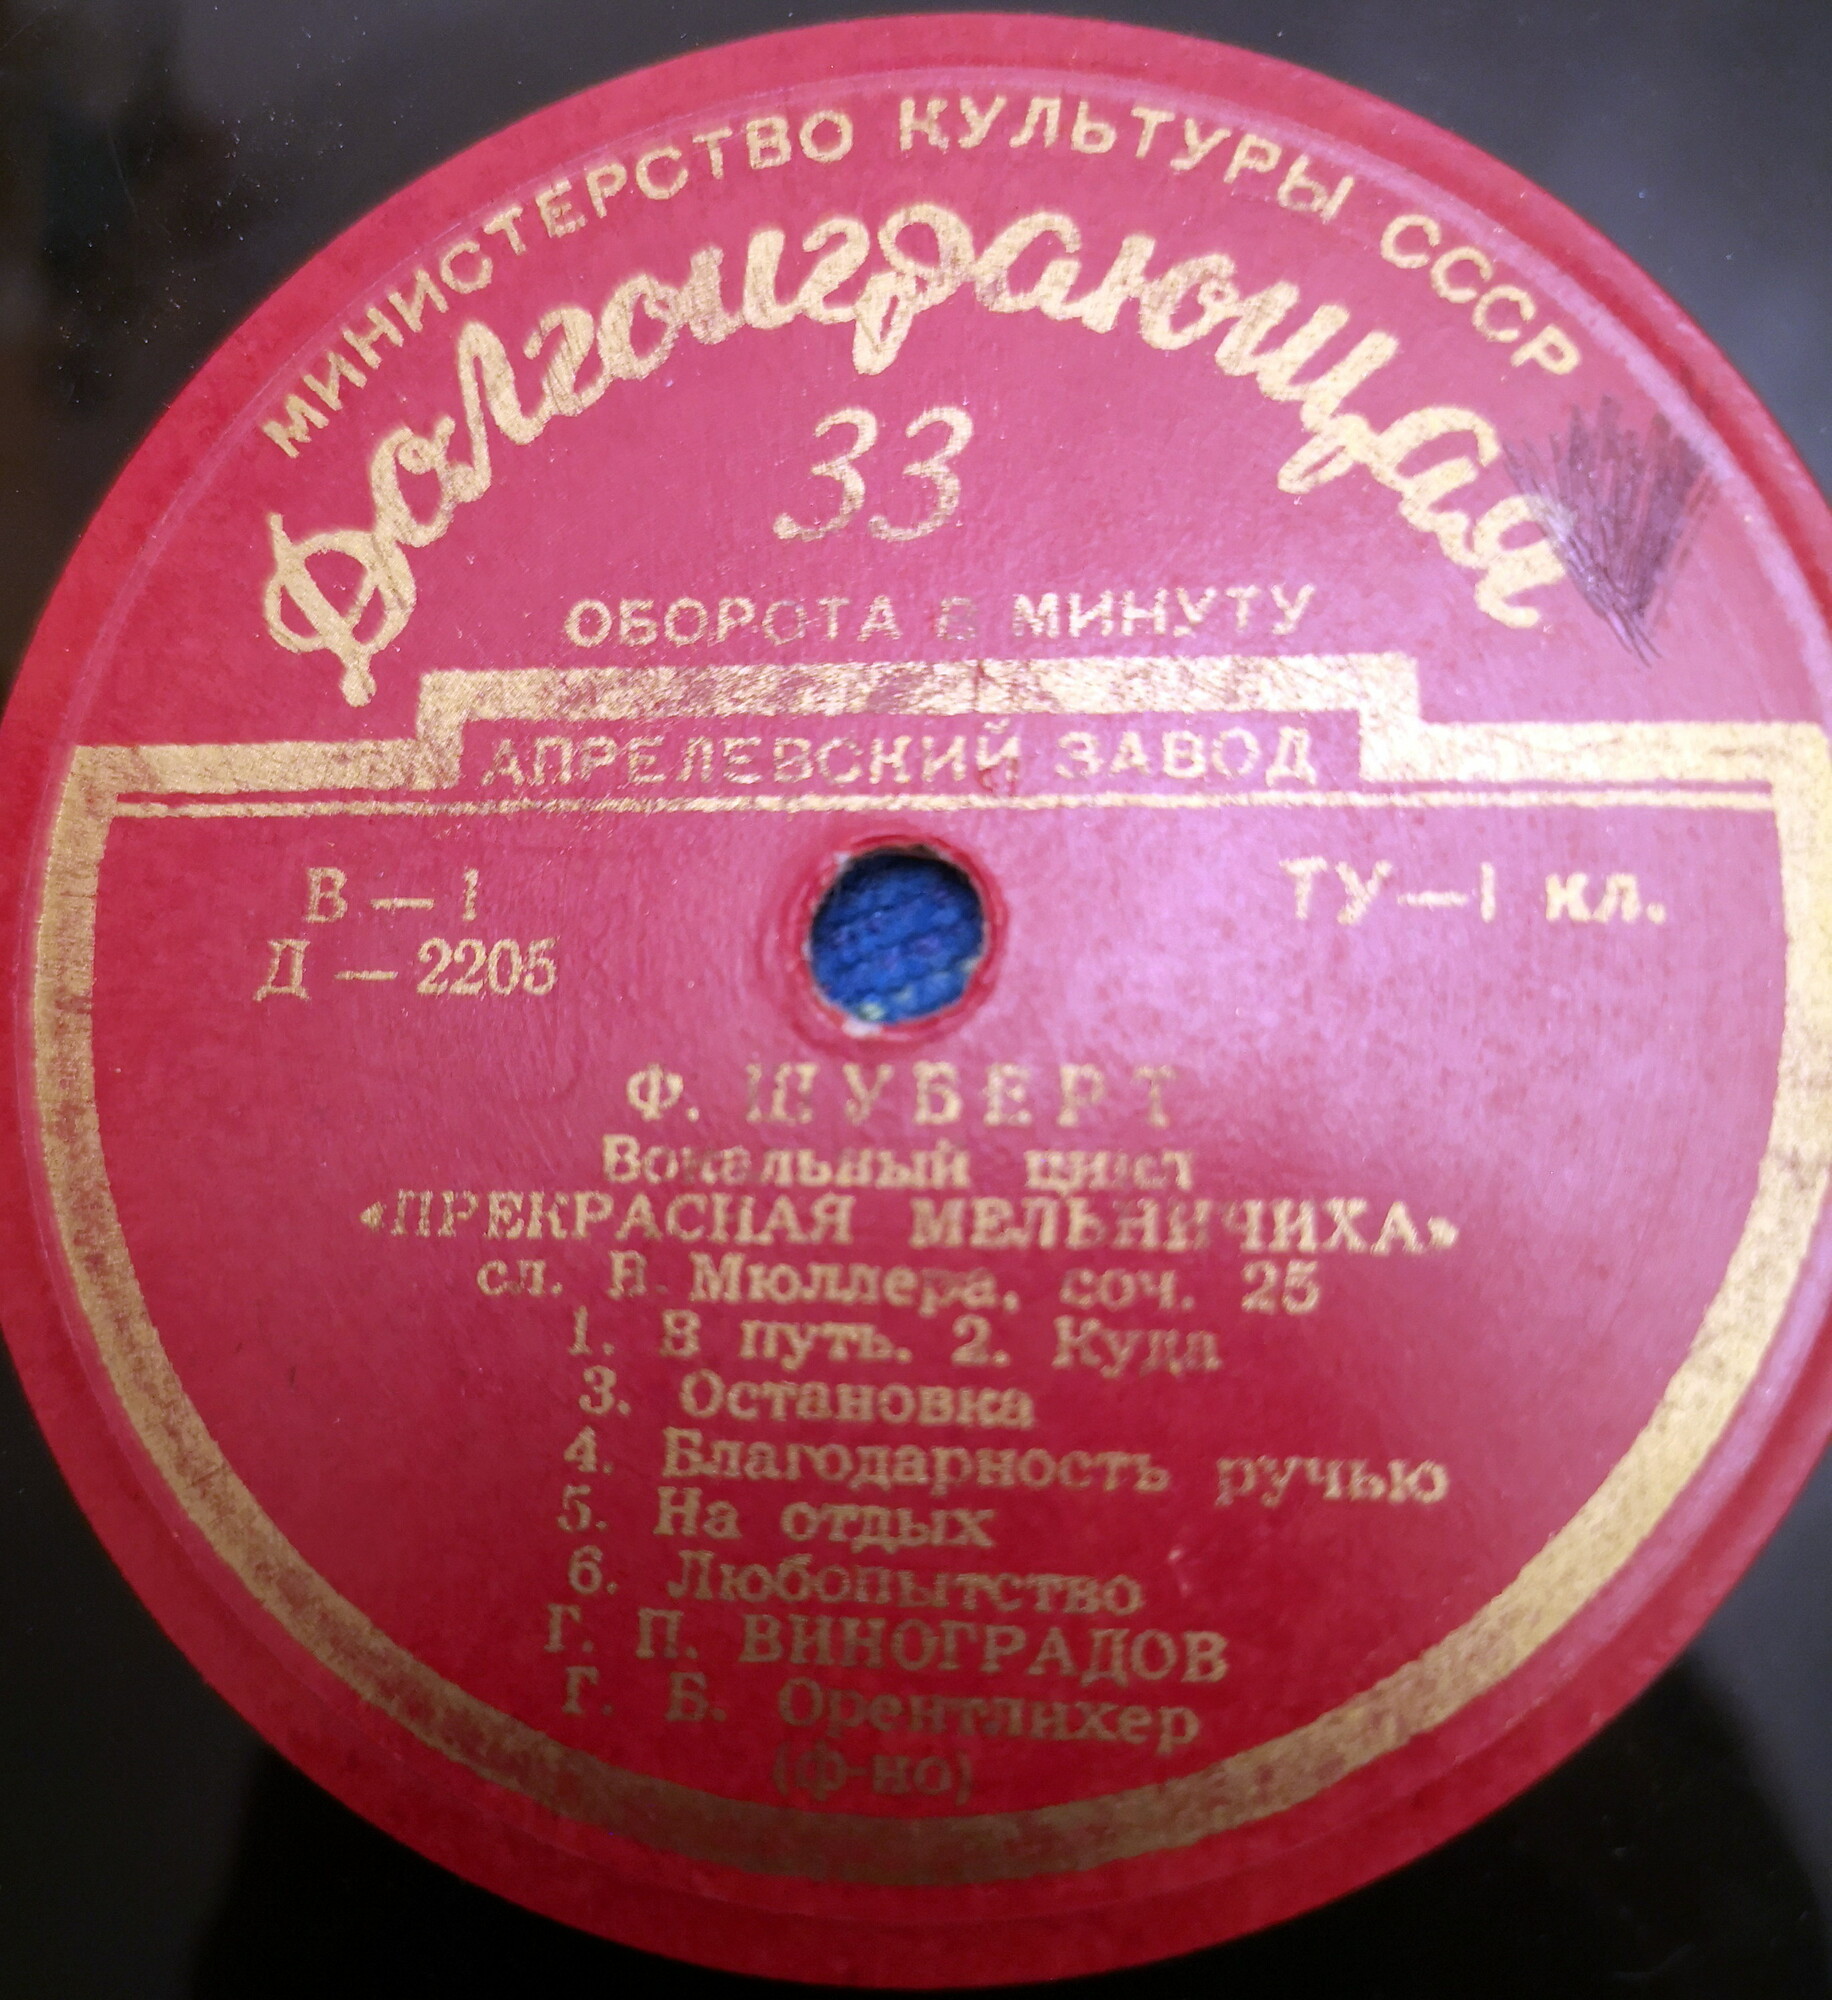 Ф. ШУБЕРТ (1797–1828): Прекрасная мельничиха, вокальный цикл (Г. Виноградов, тенор)